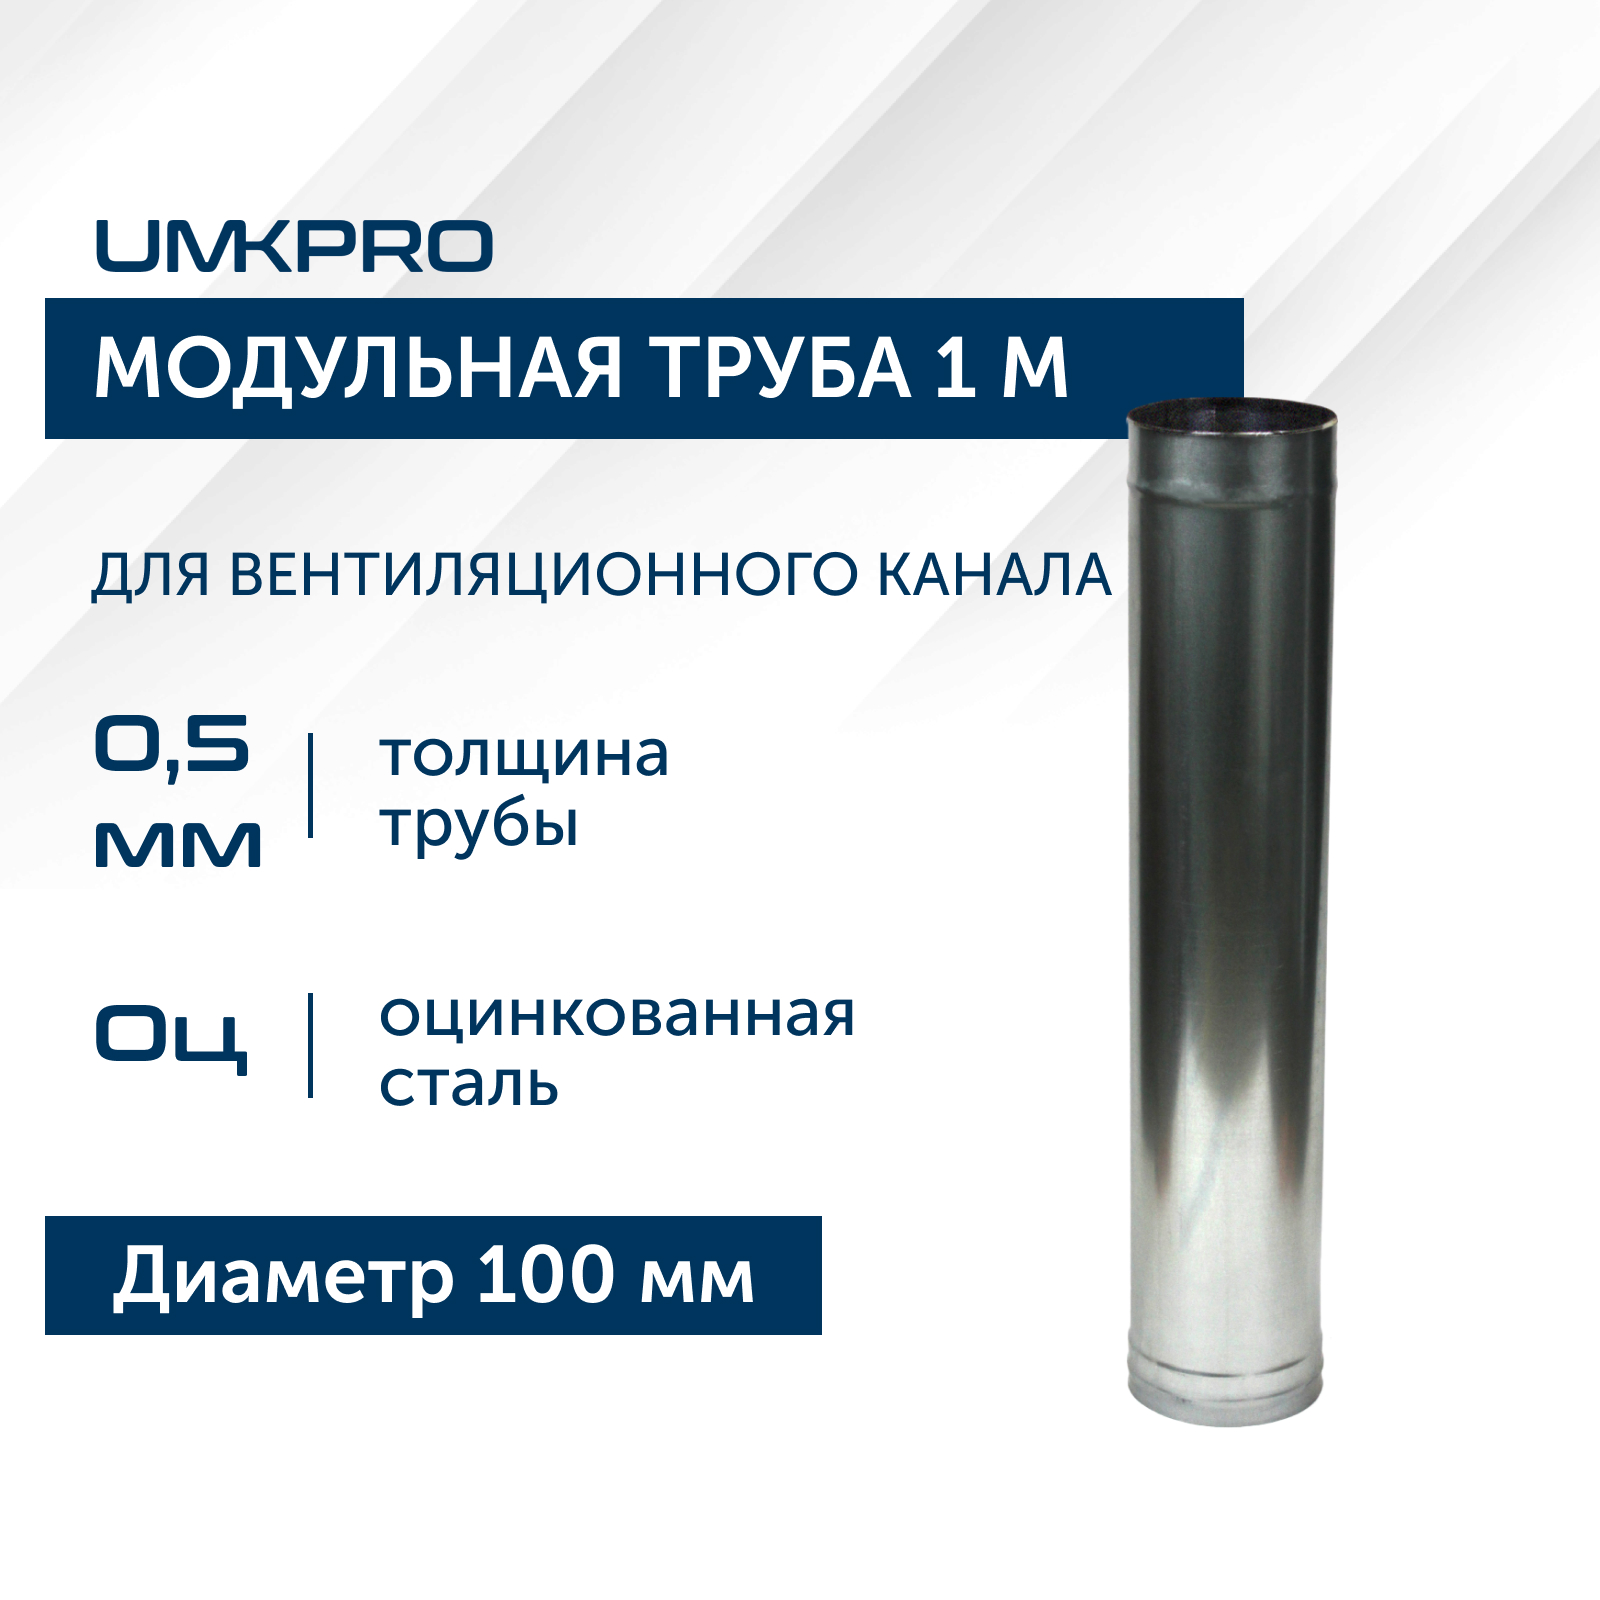 Труба модульная для дымохода 1 м UMKPRO, D 100, Оц/0,5мм модульная прихожая горизонт 18